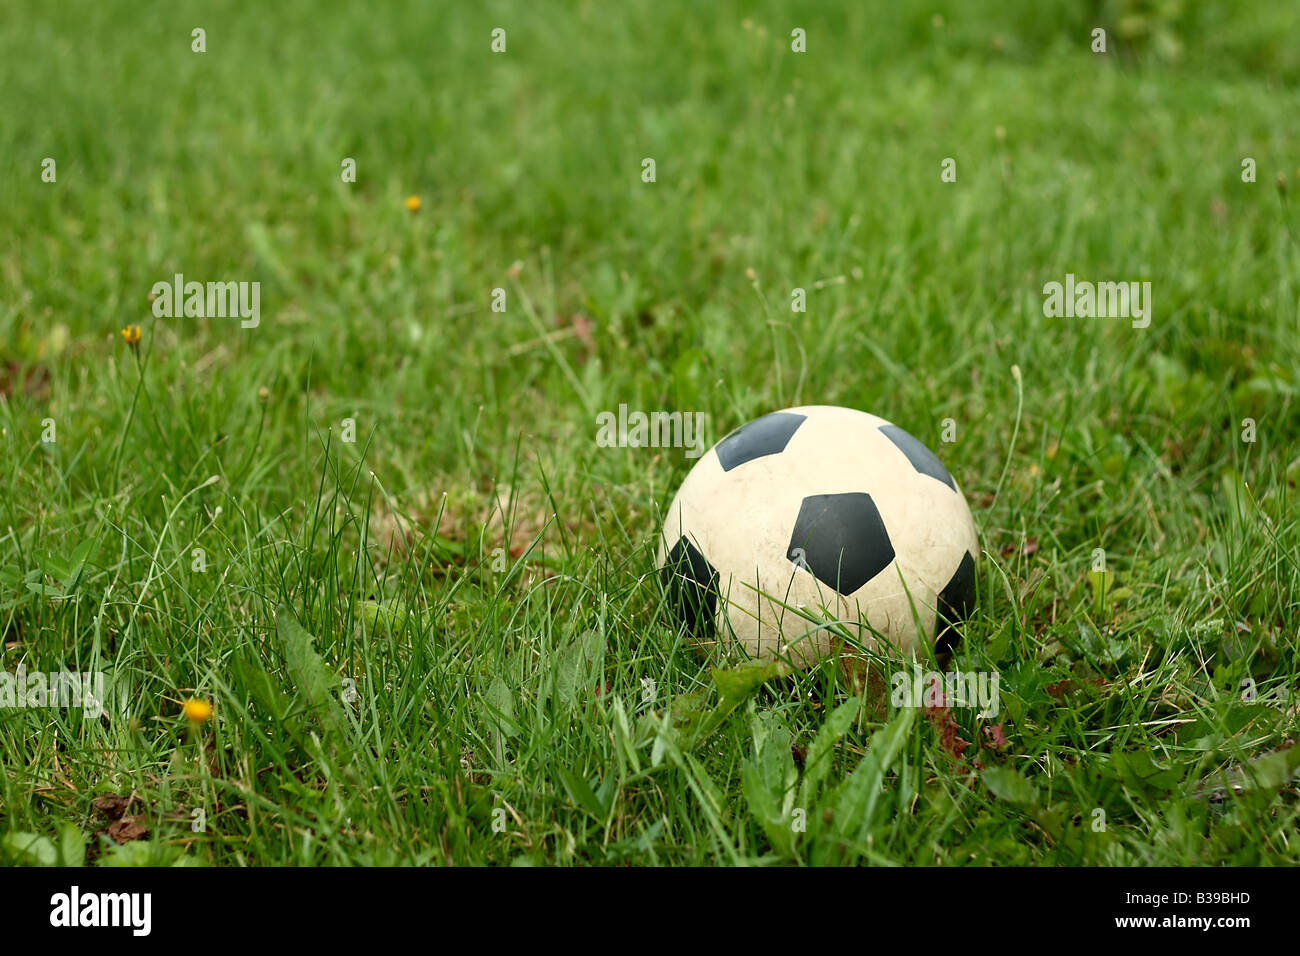 Fußball auf dem grünen Rasen Stockfoto